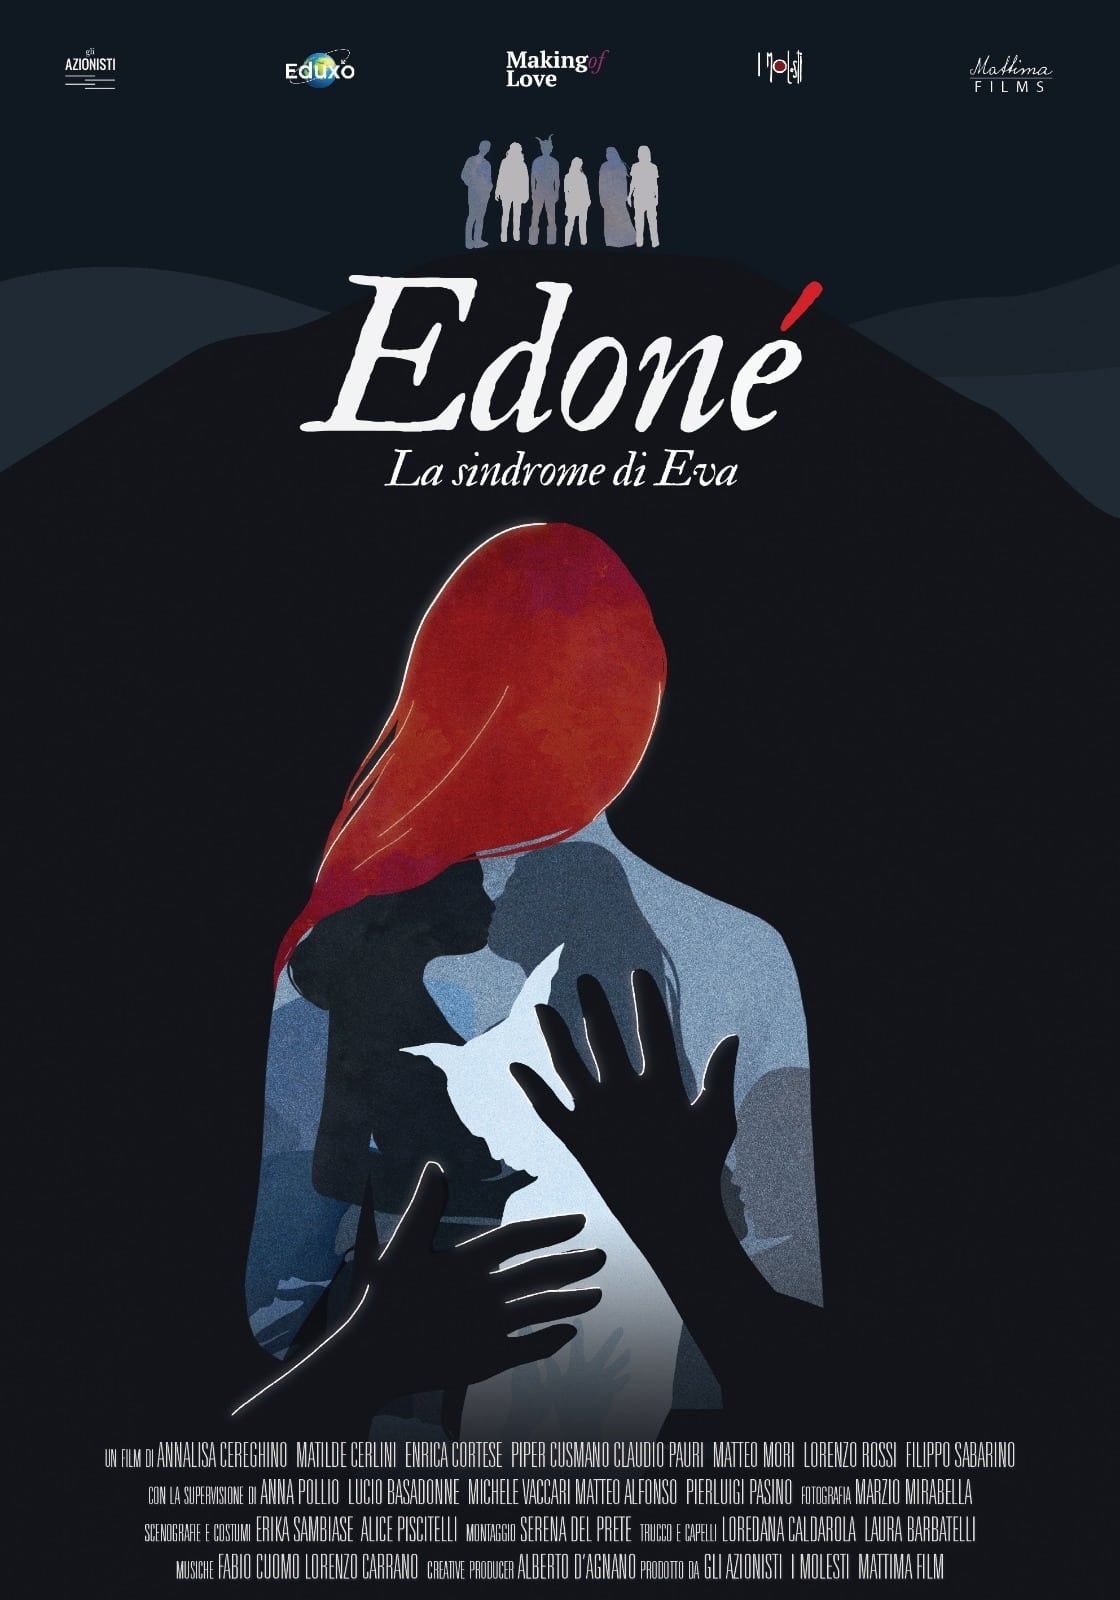 Edoné – Eva’s Syndrome